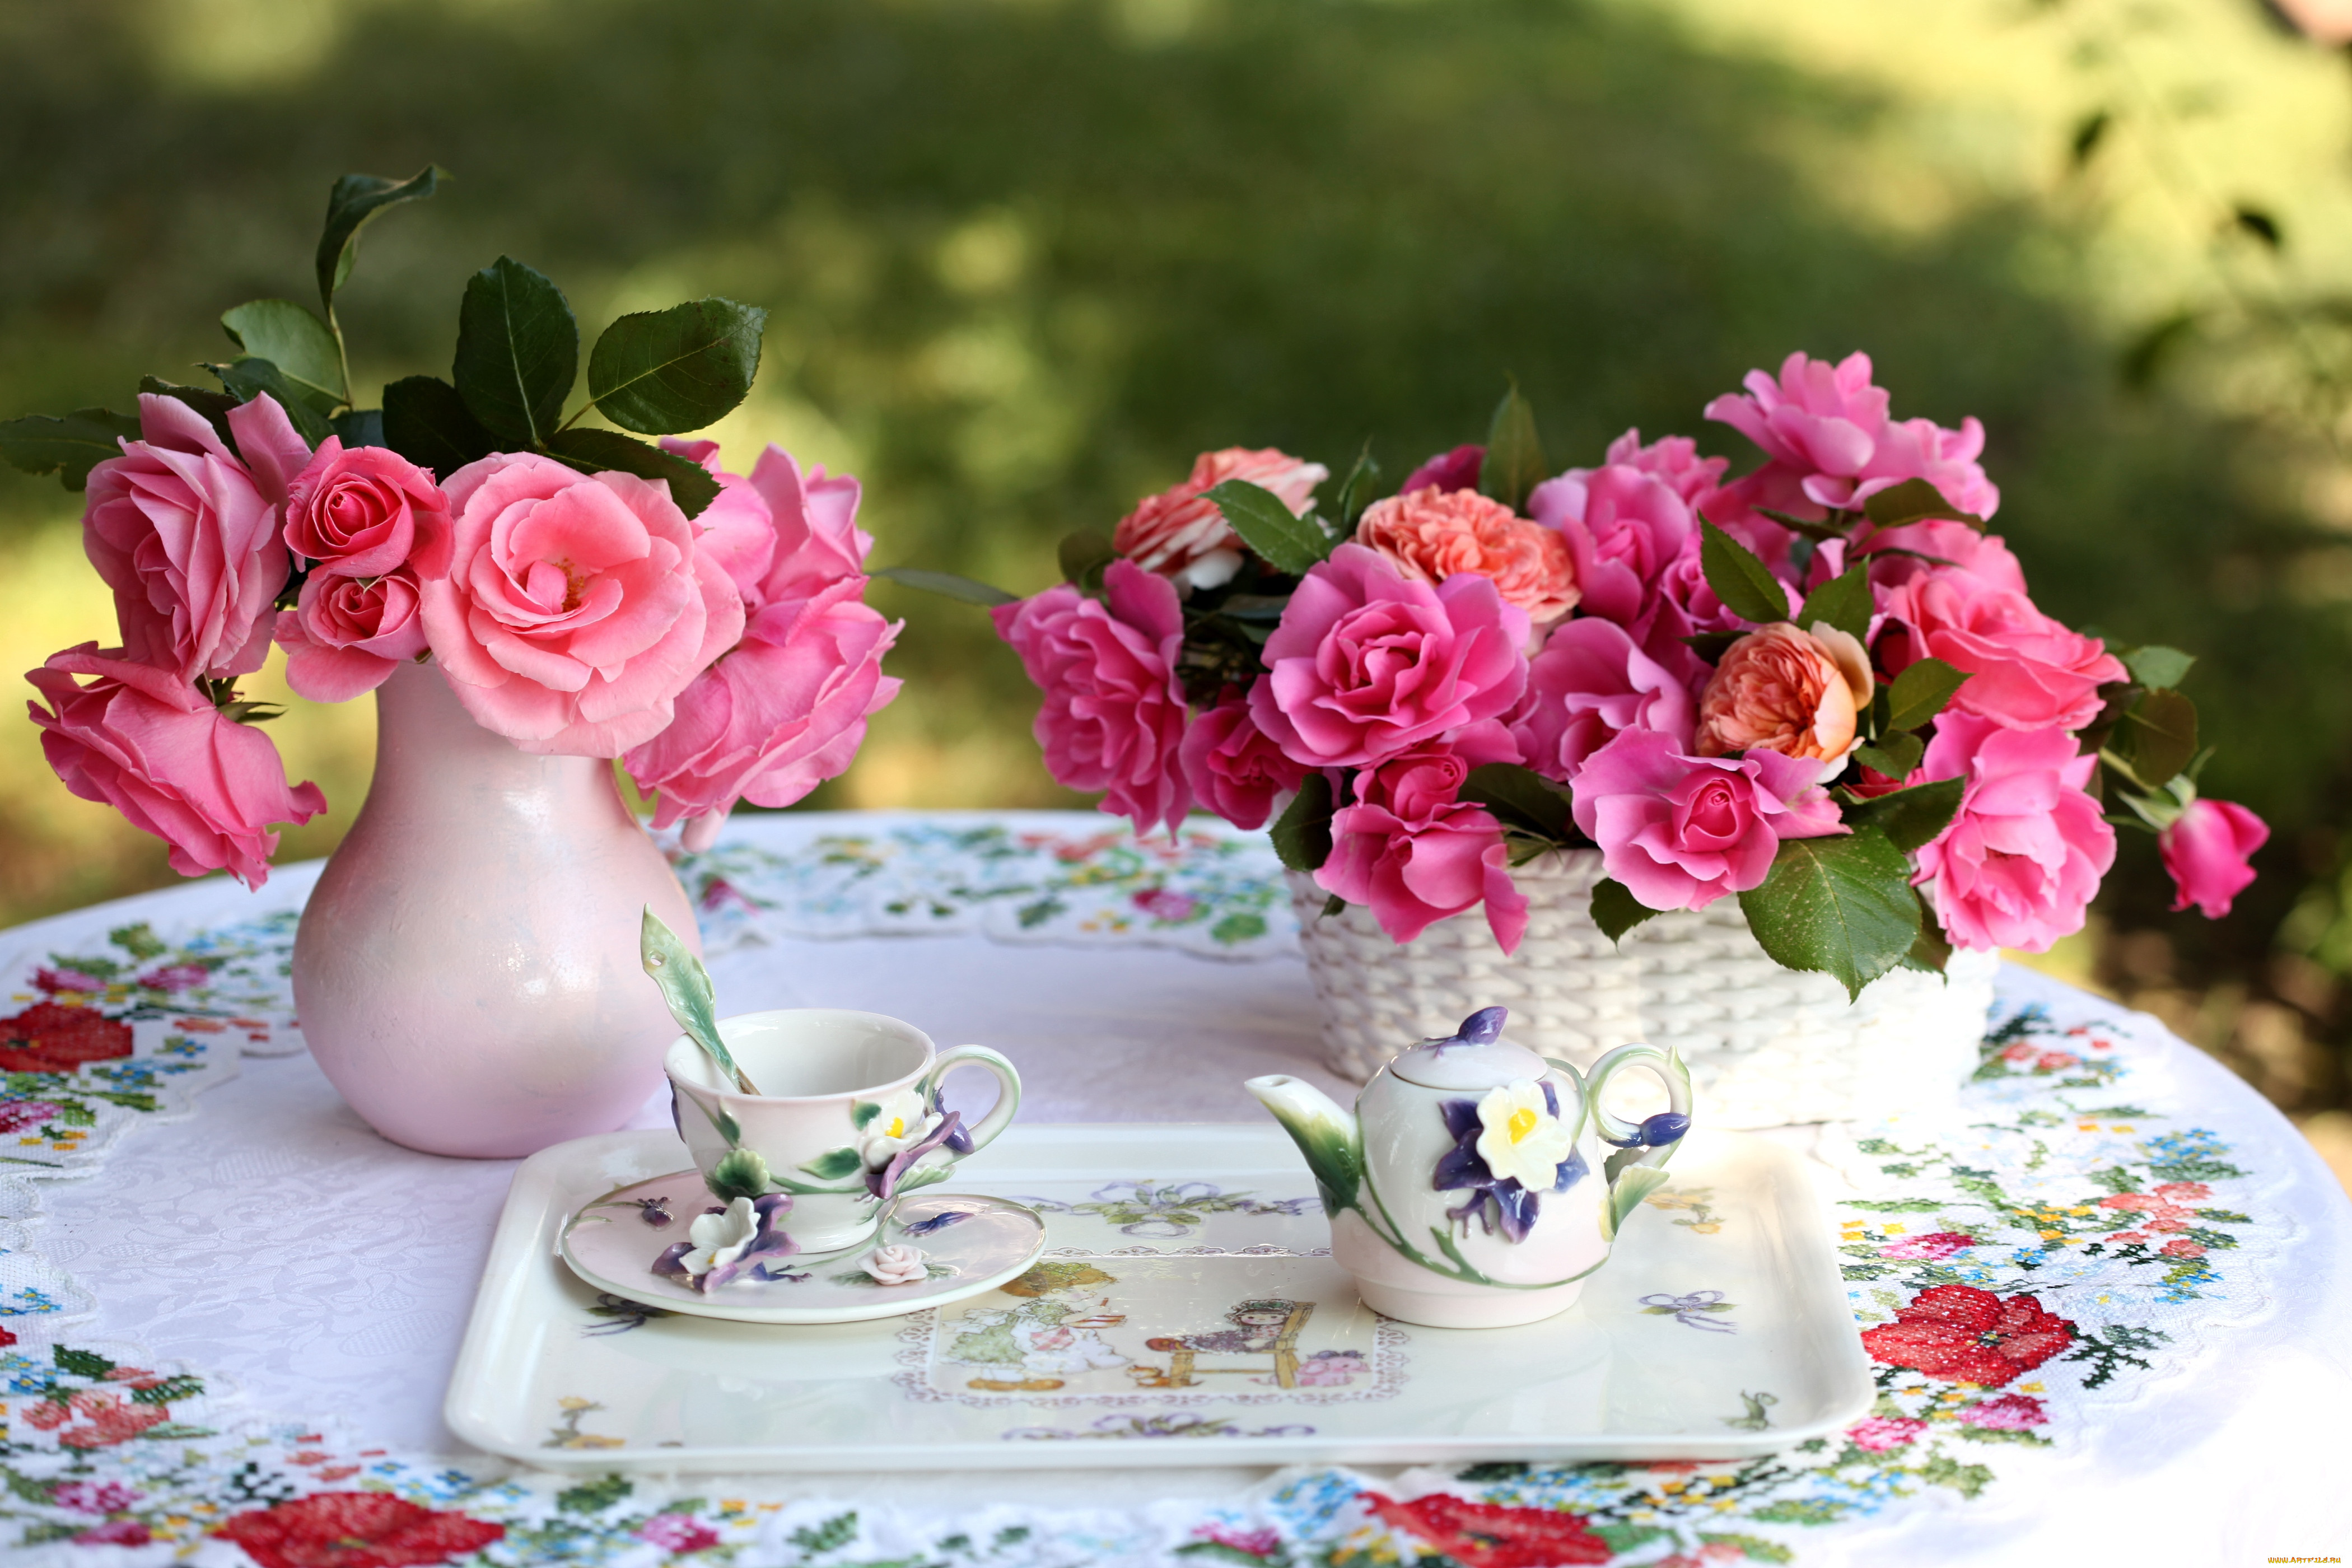 Доброго дня нежные цветы. Утренние цветы. Цветы на столе. Красивые букеты цветов в вазах. Утренний букет.